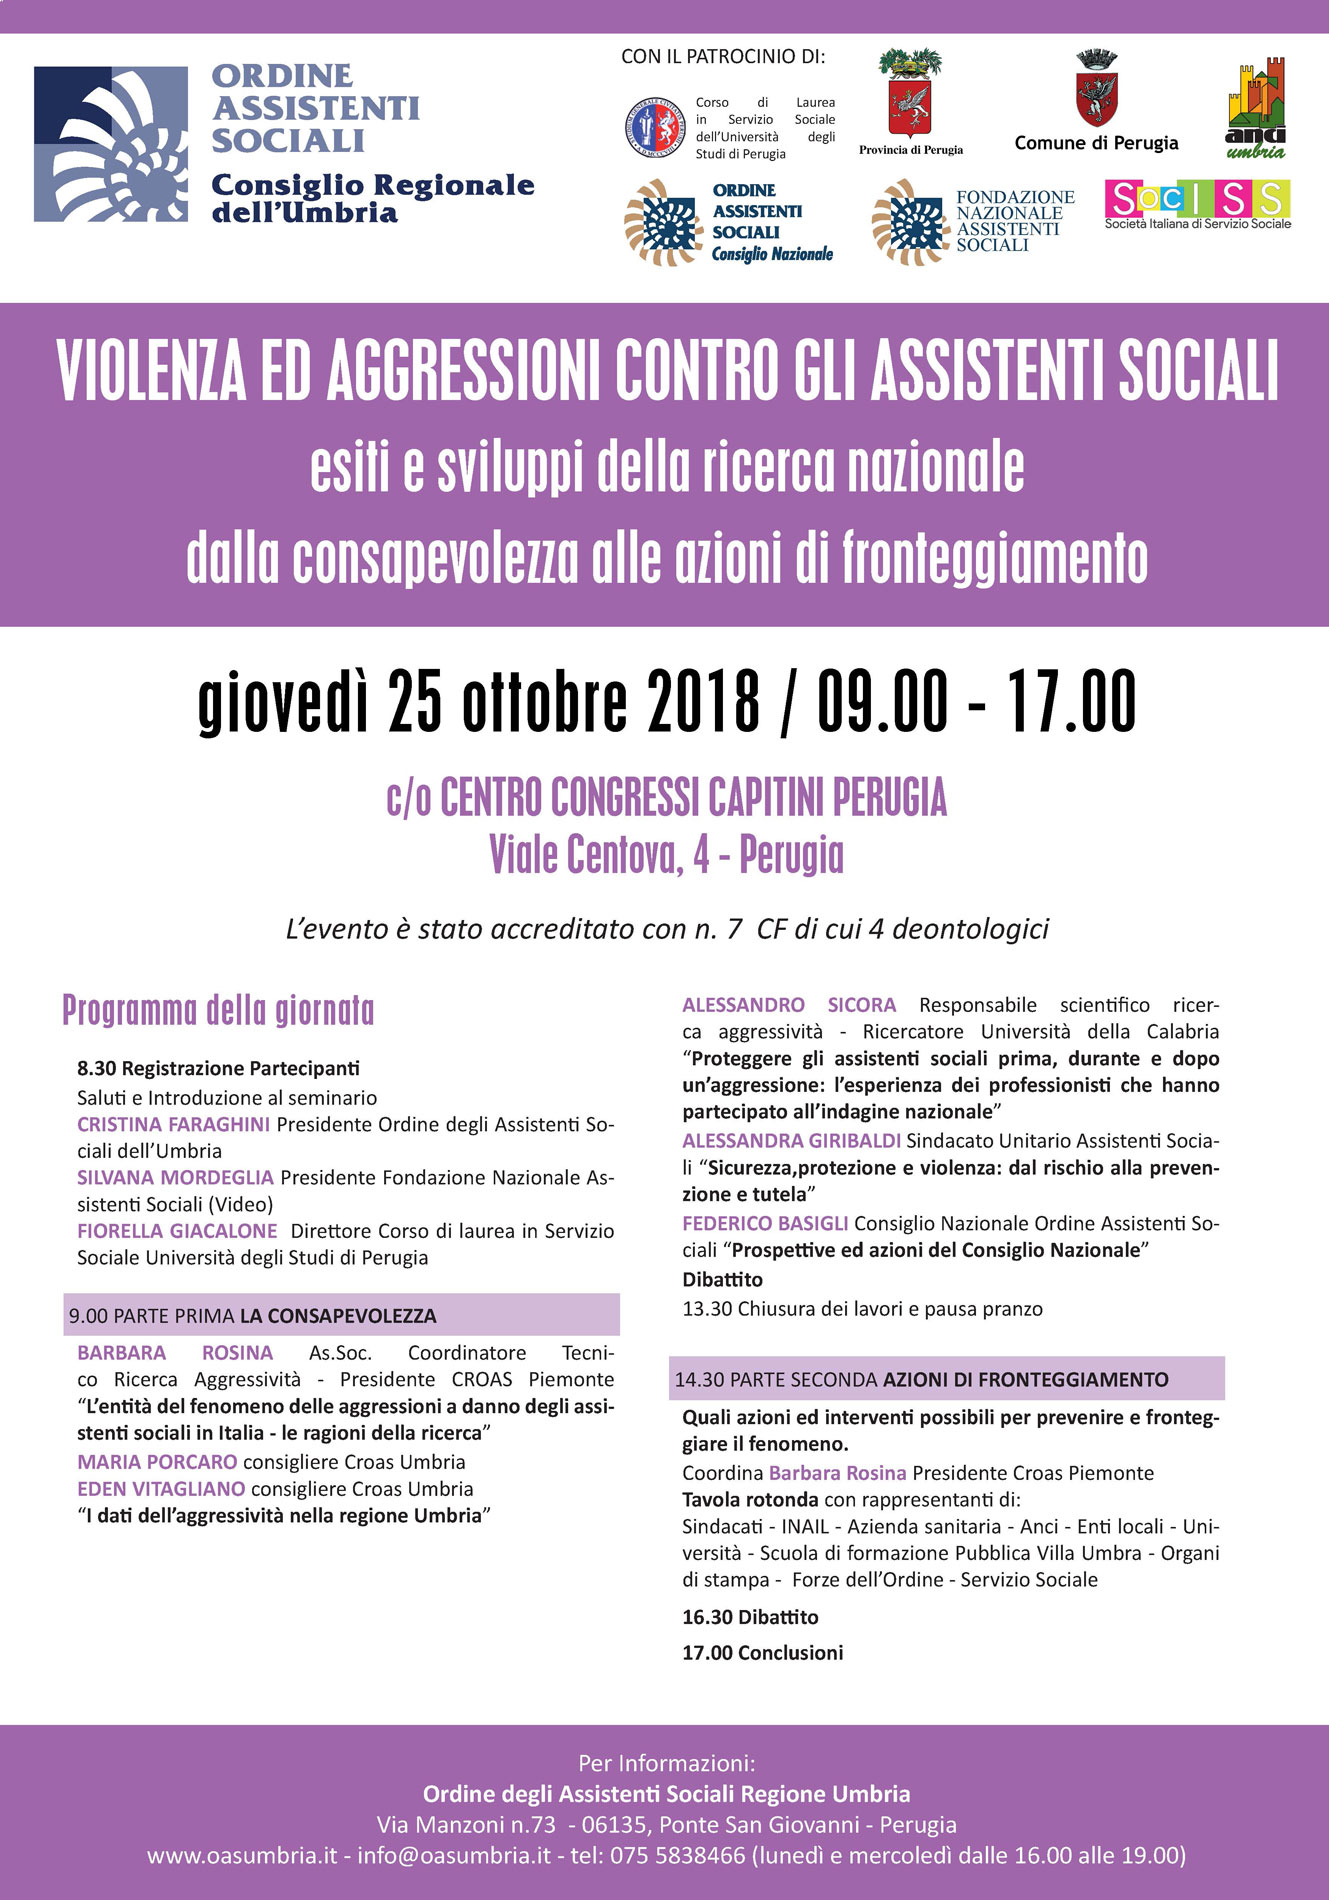 Seminario sull'aggressività nei confronti degli assistenti sociali organizzato dal CROAS Umbria